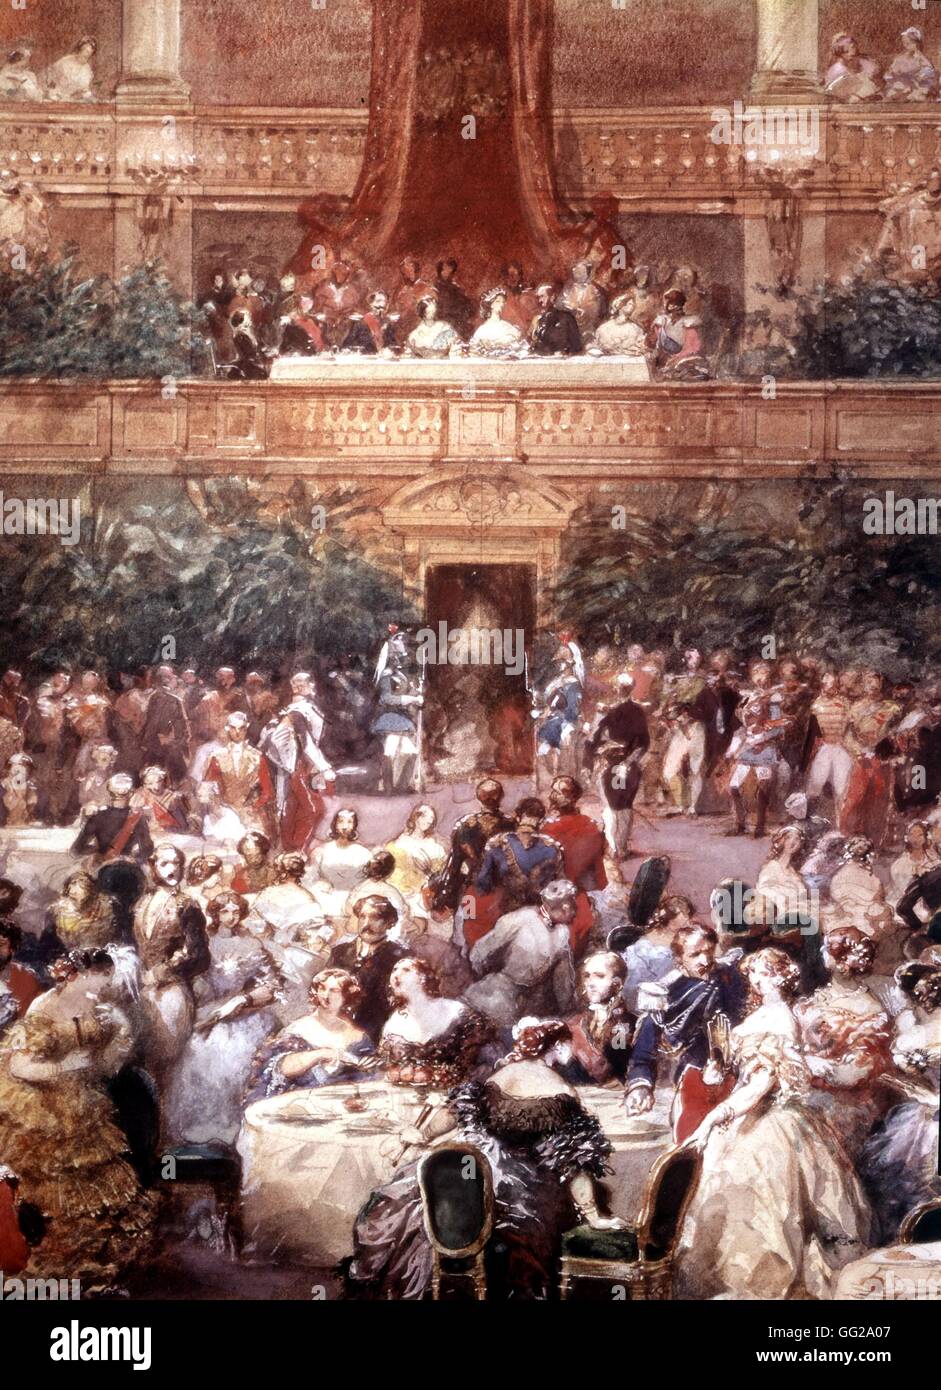 Eugène Lami (1800-1890) Le dîner donné en l'honneur de la reine Victoria dans la salle de réception au château de Versailles, le 25 août, 1853 19e siècle France Musée de Versailles Banque D'Images